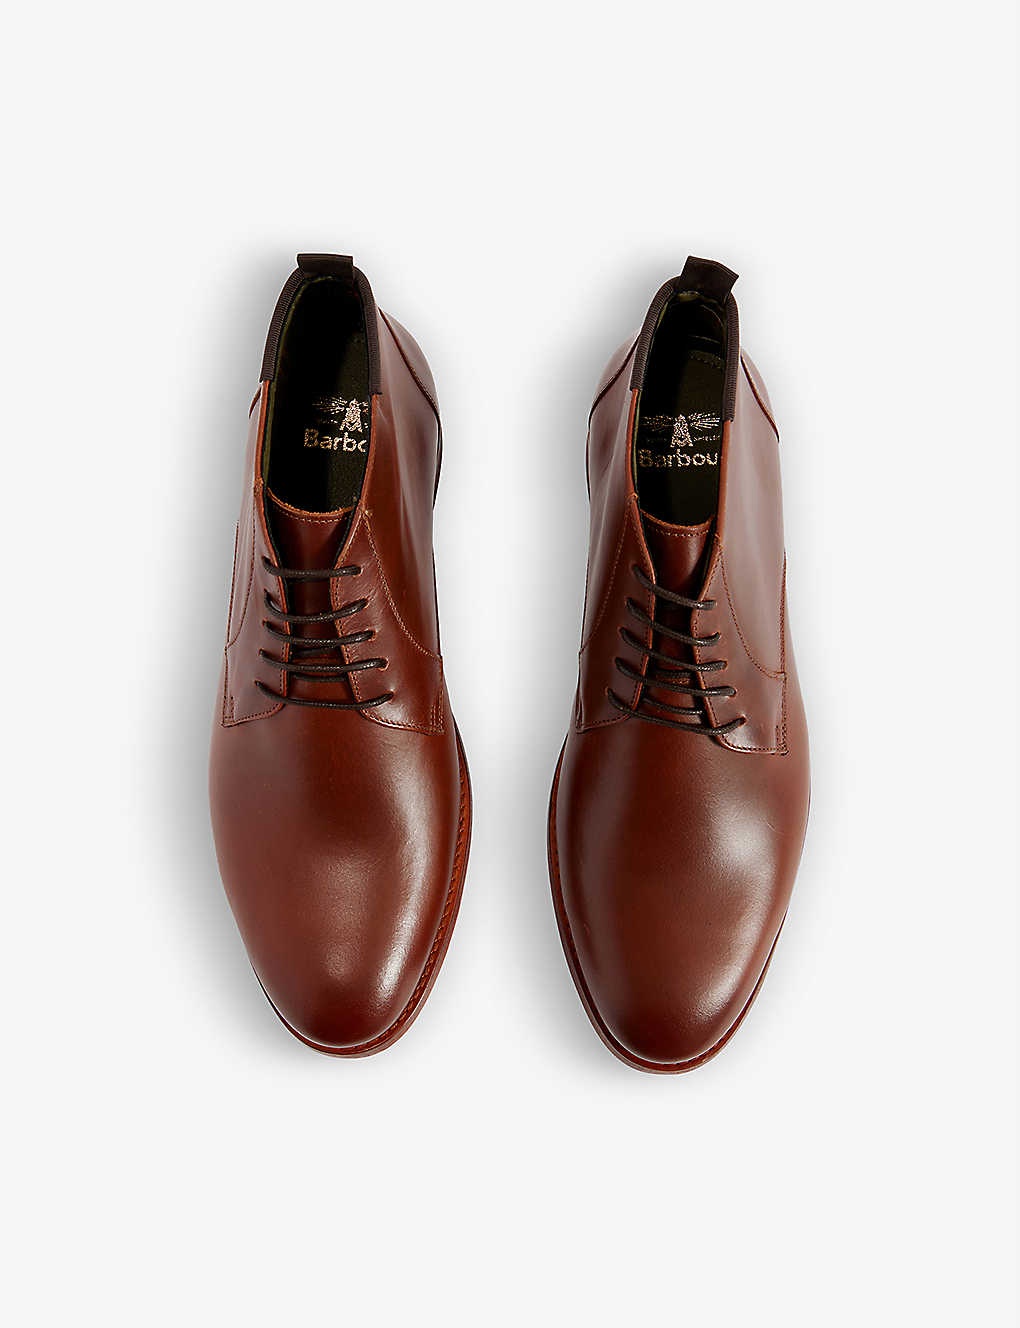 Benwell leather chukka boots - 2